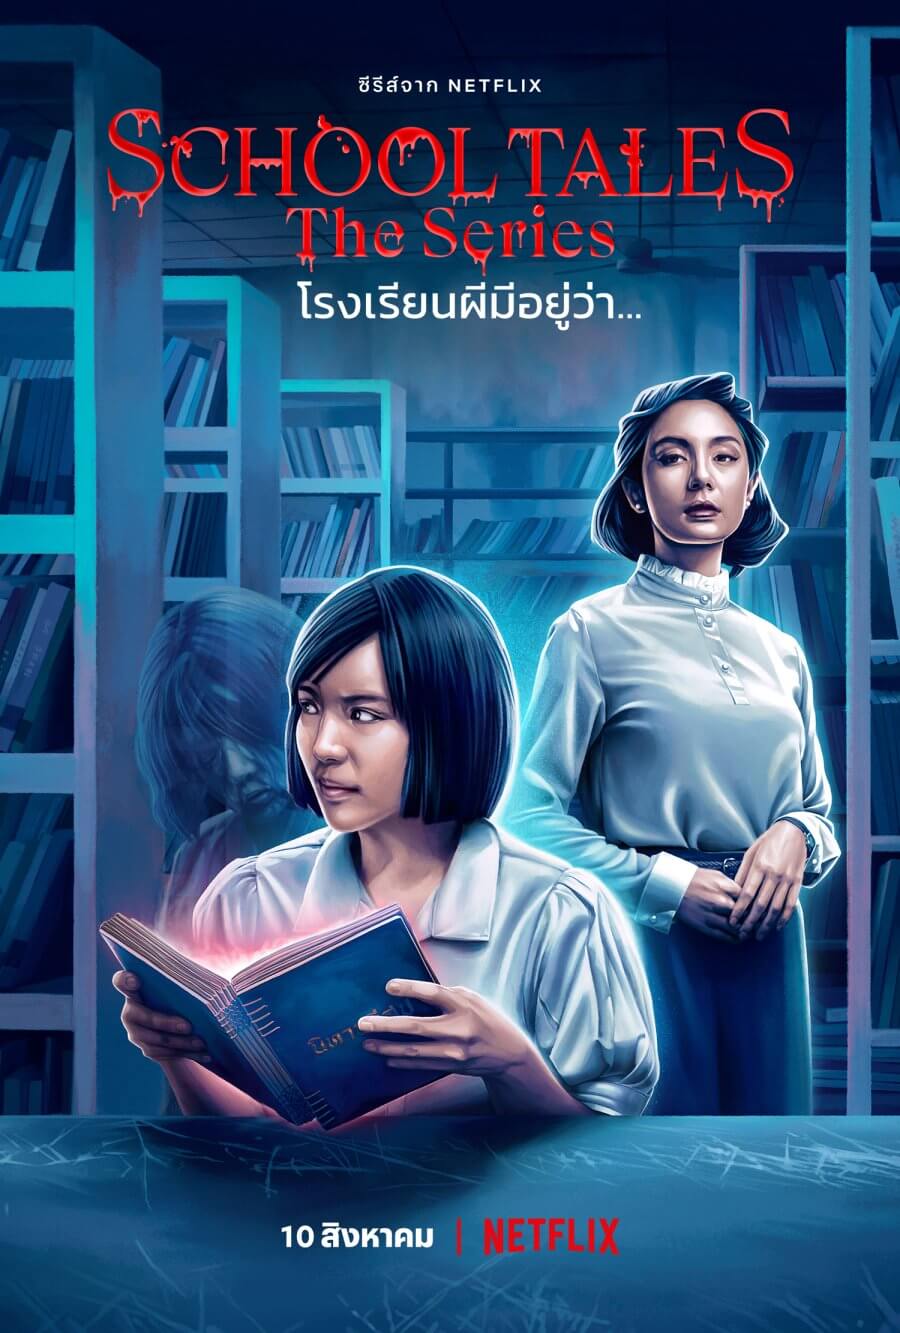 school tales thai horror anthology netflix episode 4